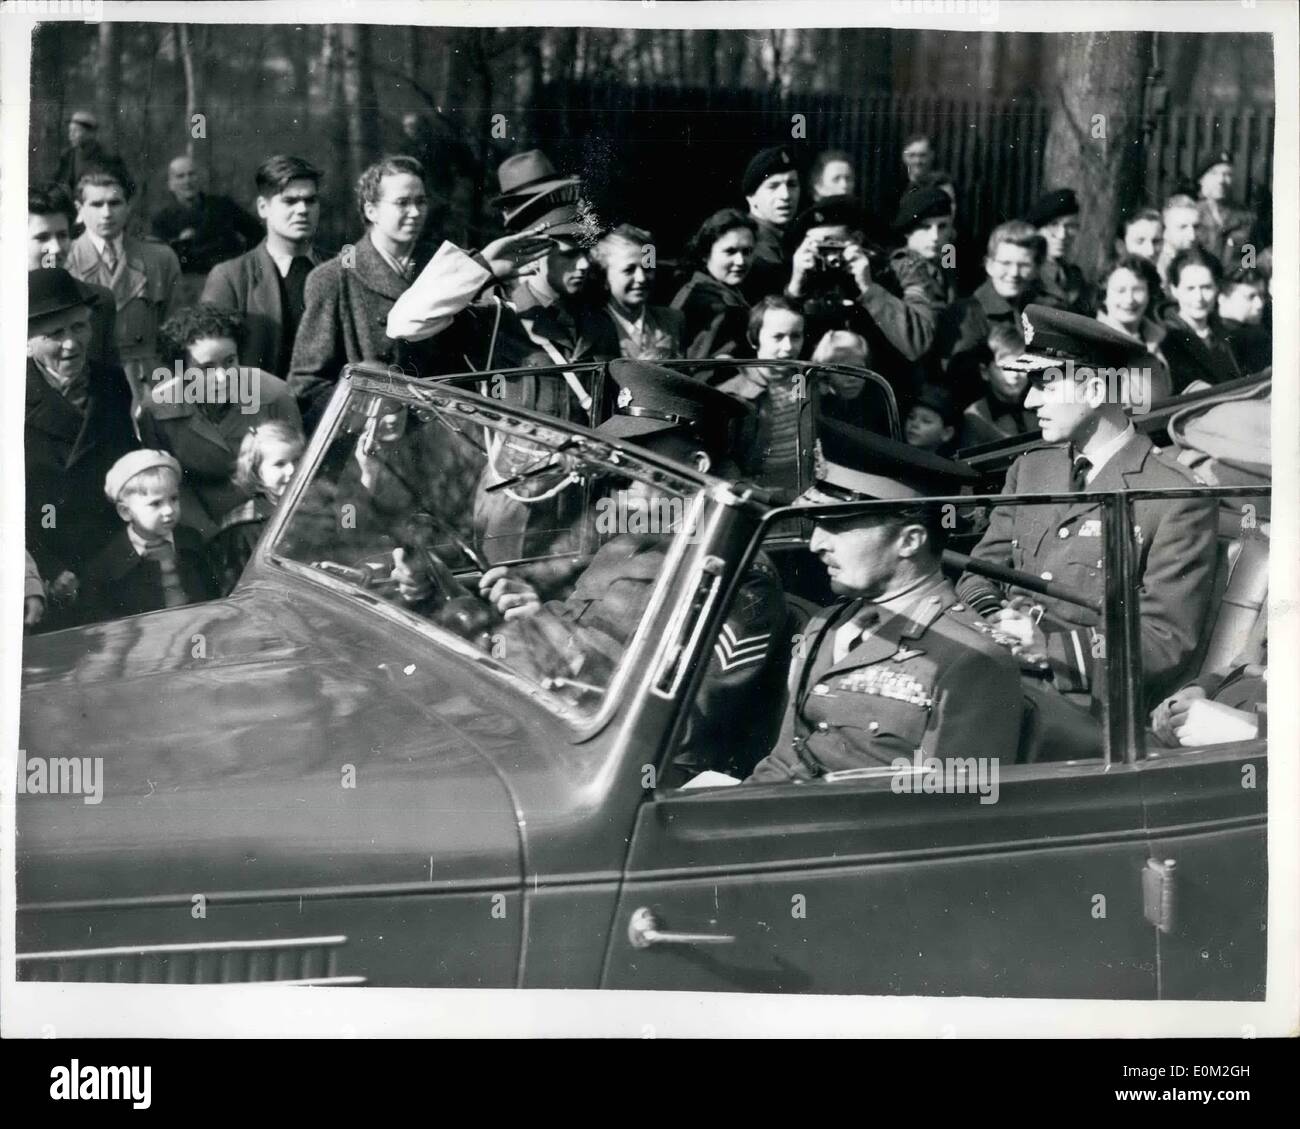 Mar. 21, 1953 - Français Les gens regardent le duc d'Édimbourg - Lors de sa tournée des forces britanniques.. Photo montre :- un num Banque D'Images